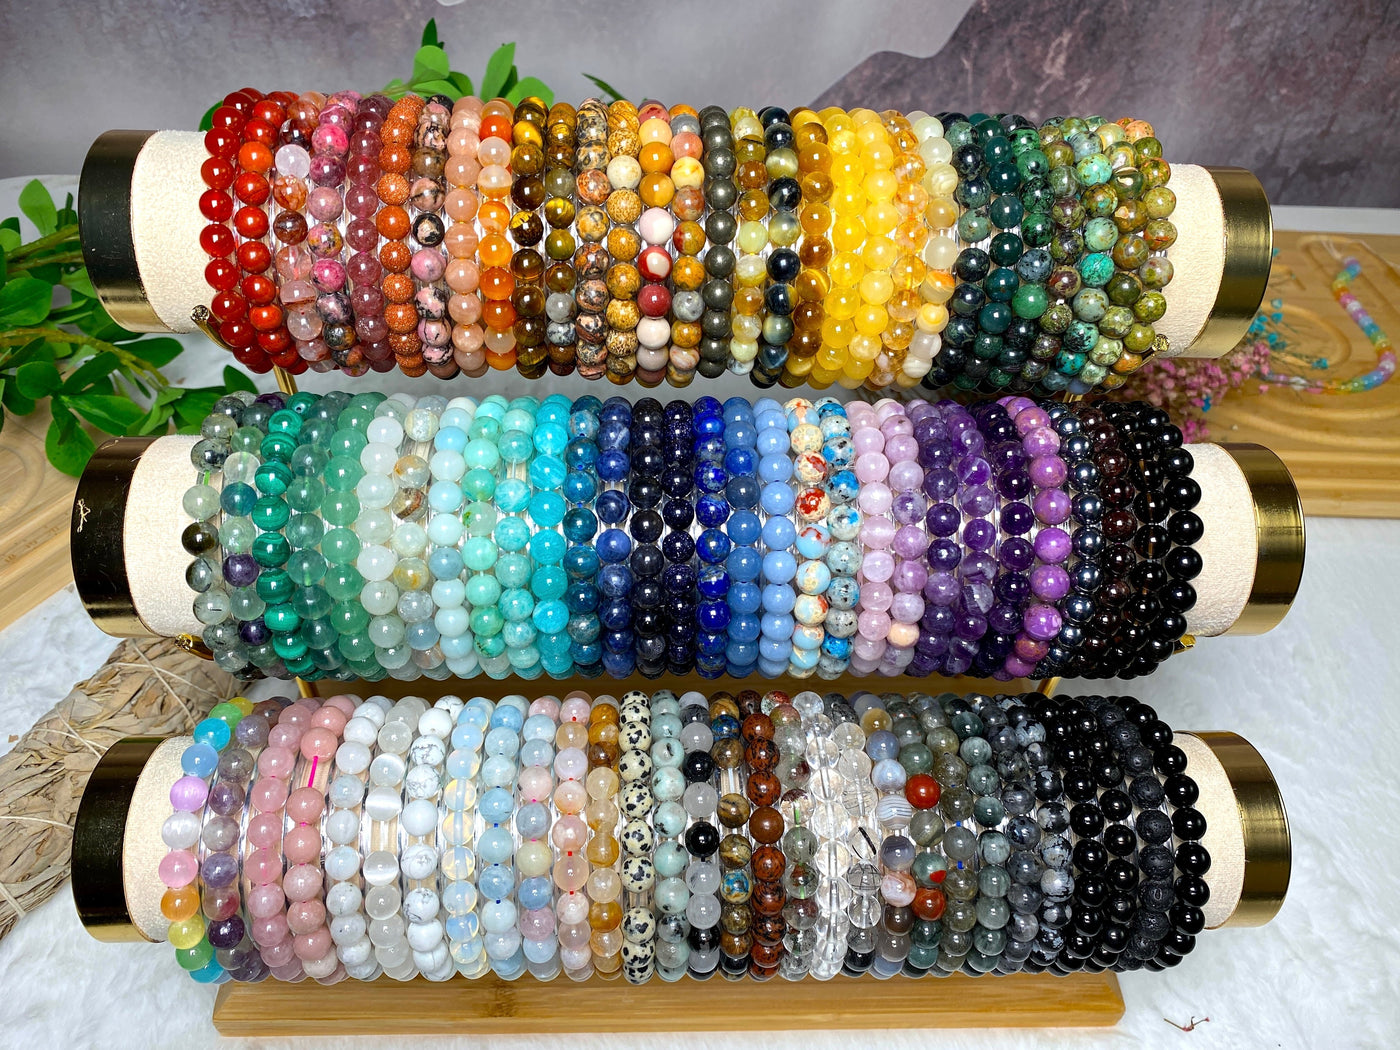 Crystal bracelet 90 kinds of 8mm Natural bracelets No.1-70